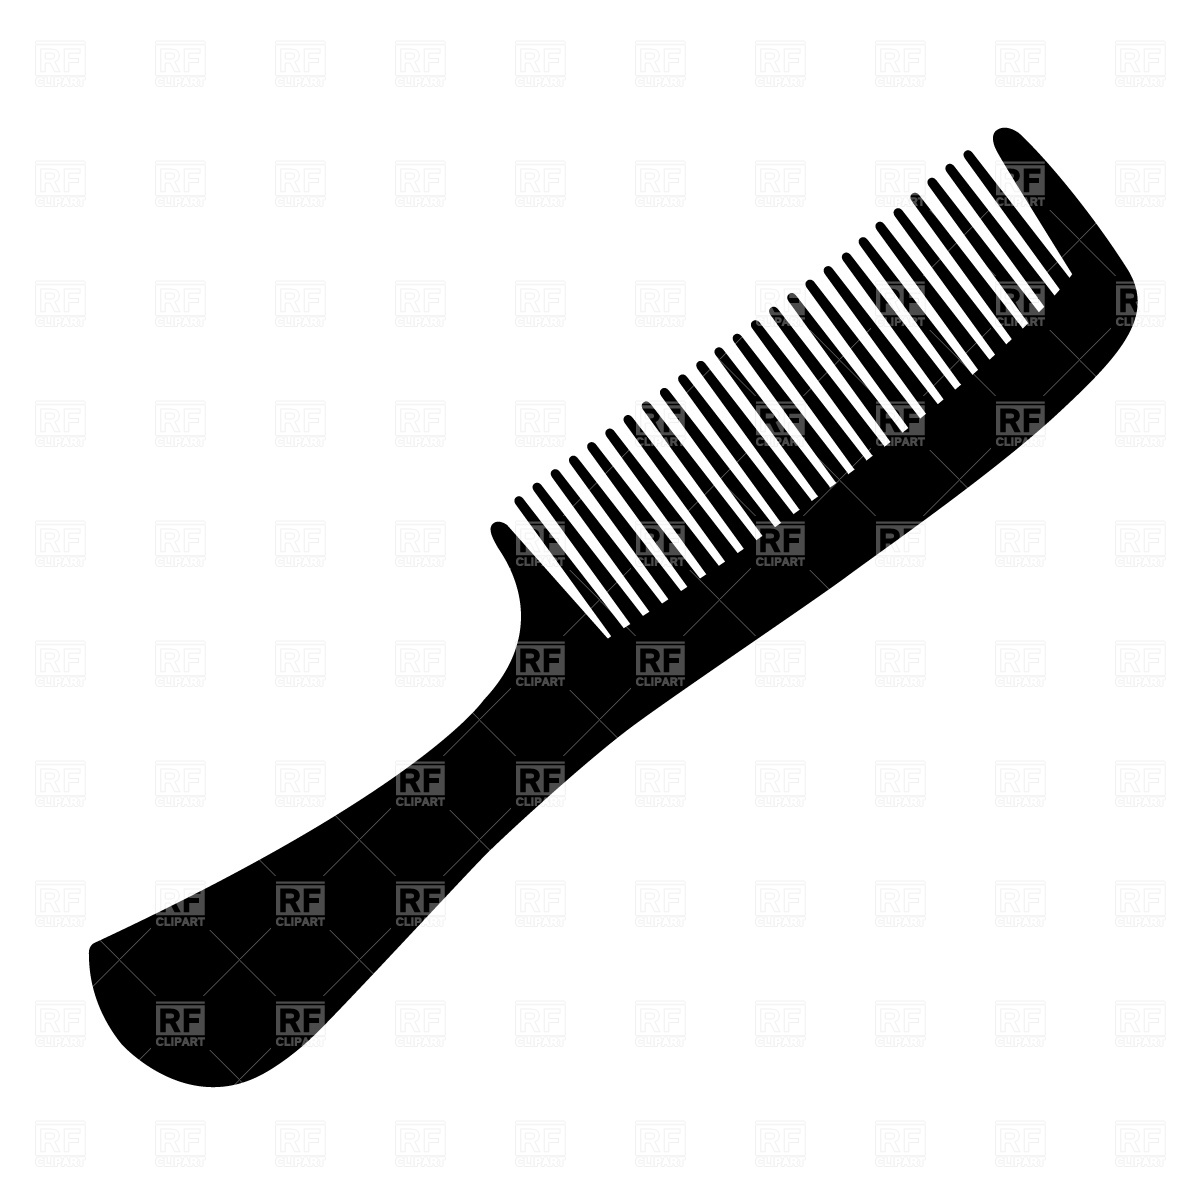 Comb Clip Art Free